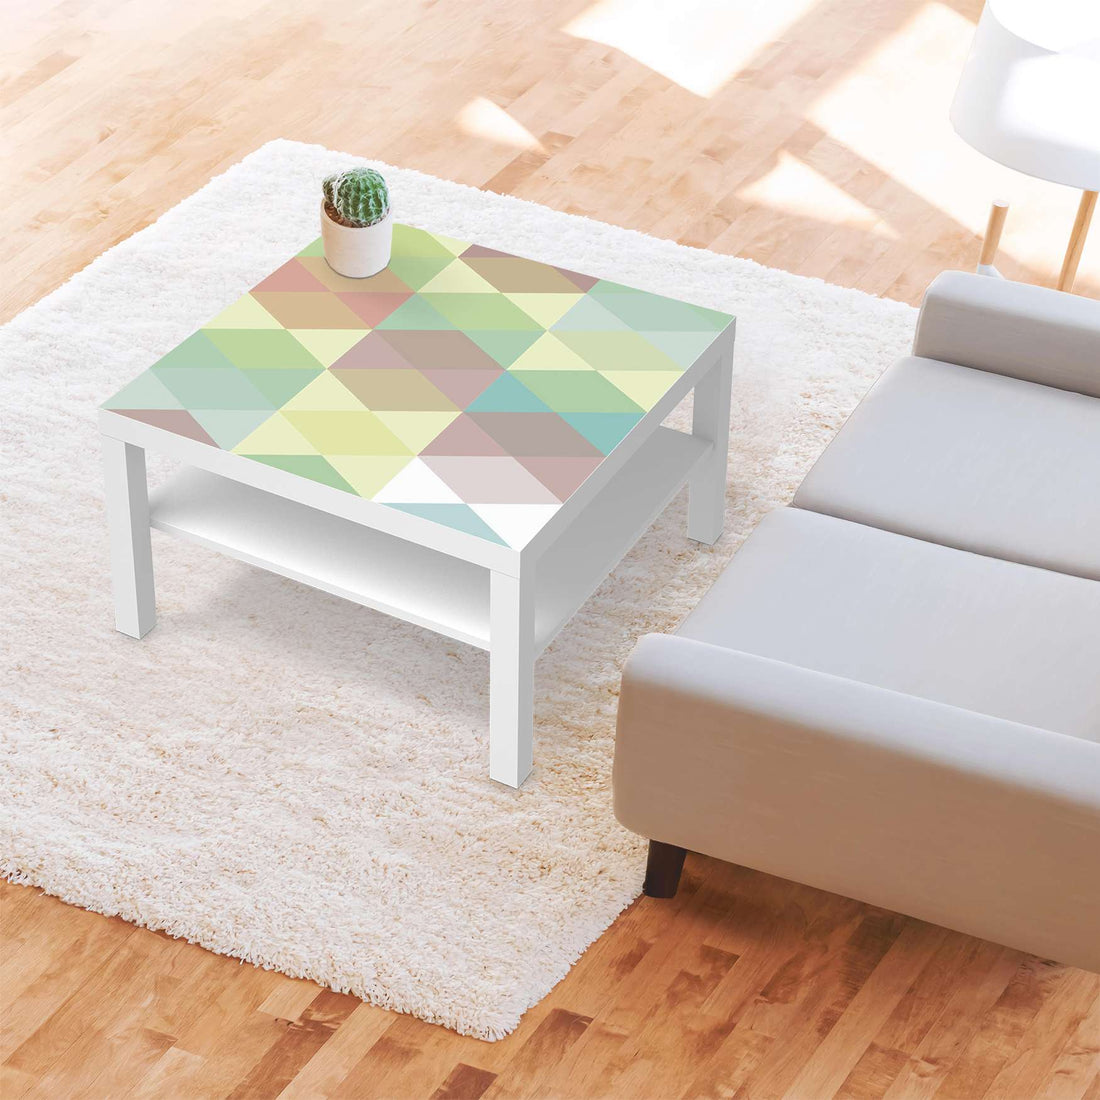 Selbstklebende Folie Melitta Pastell Geometrie - IKEA Lack Tisch 78x78 cm - Wohnzimmer